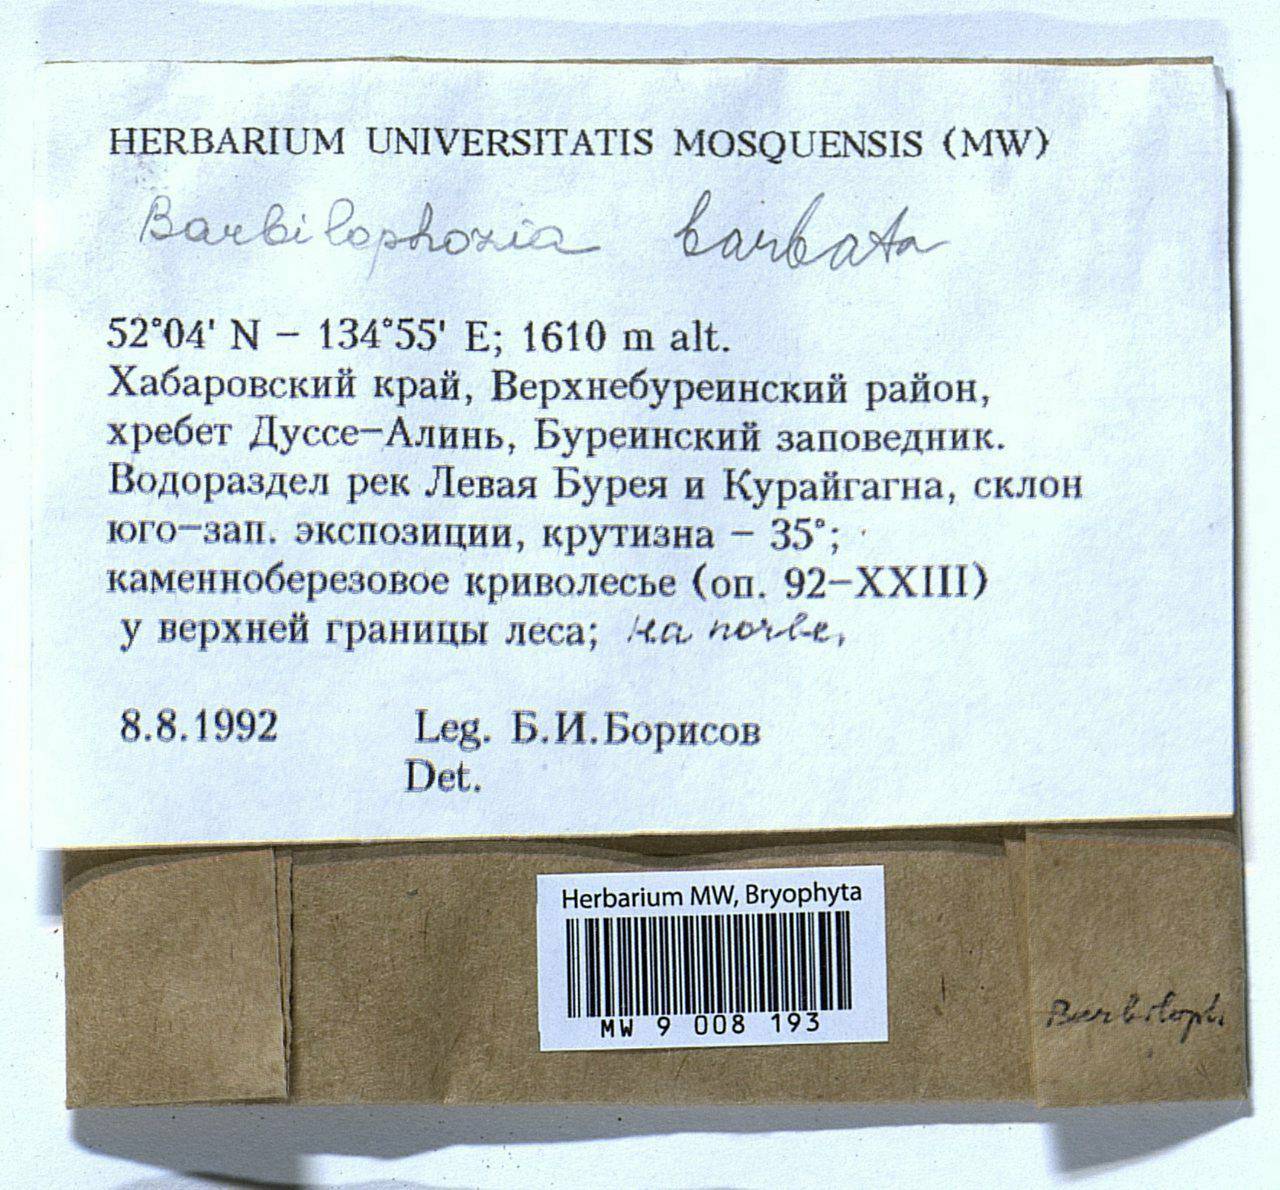 Barbilophozia barbata (Schmidel ex Schreb.) Loeske, Bryophytes, Bryophytes - Russian Far East (excl. Chukotka & Kamchatka) (B20) (Russia)